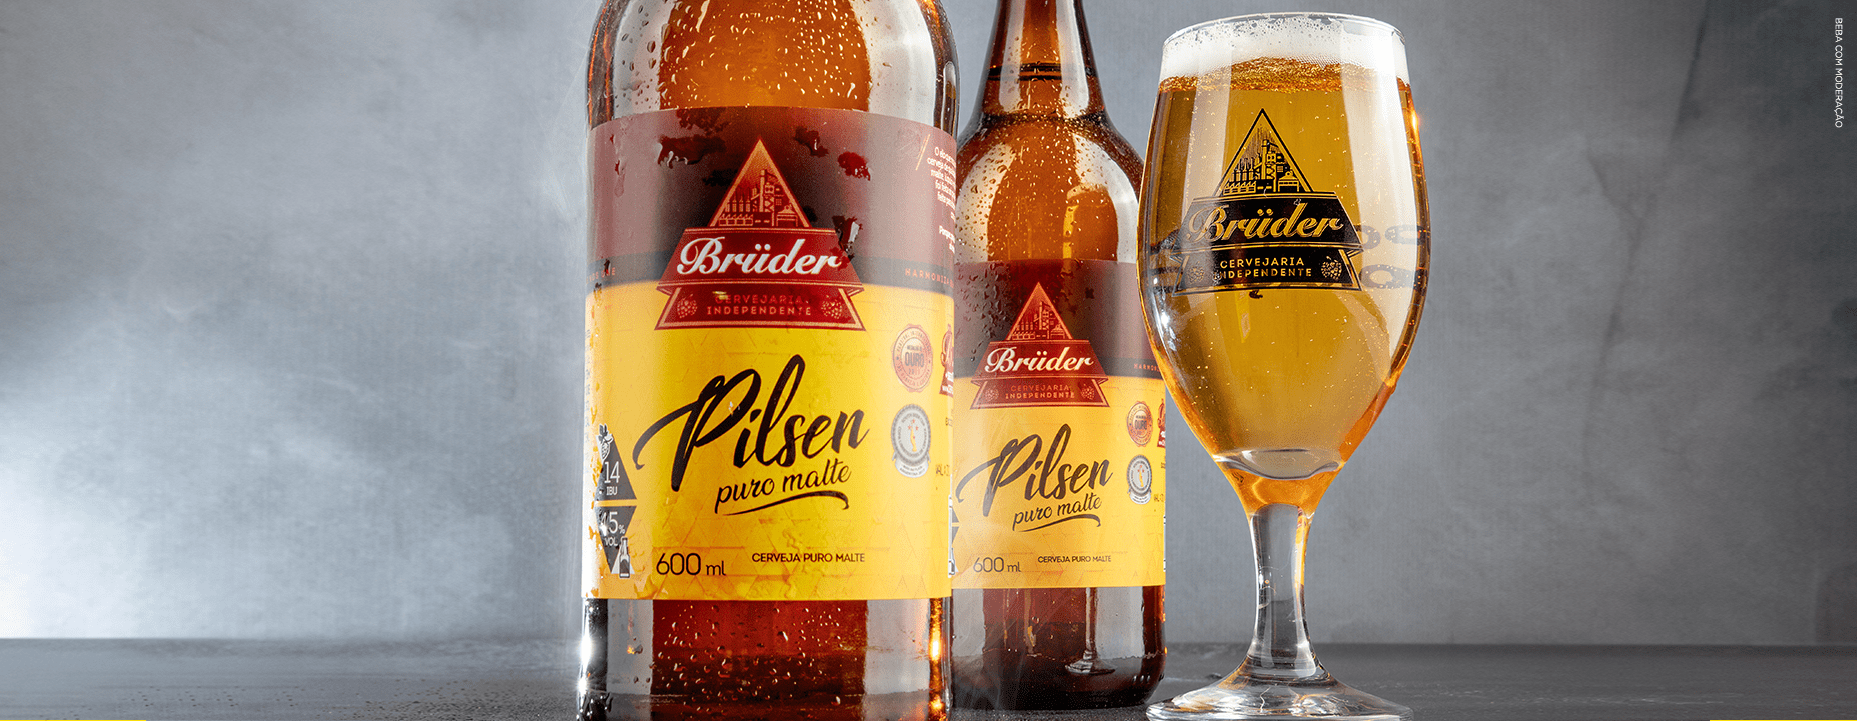 garrafas da cerveja Pilsen Brüder com taças servidas.